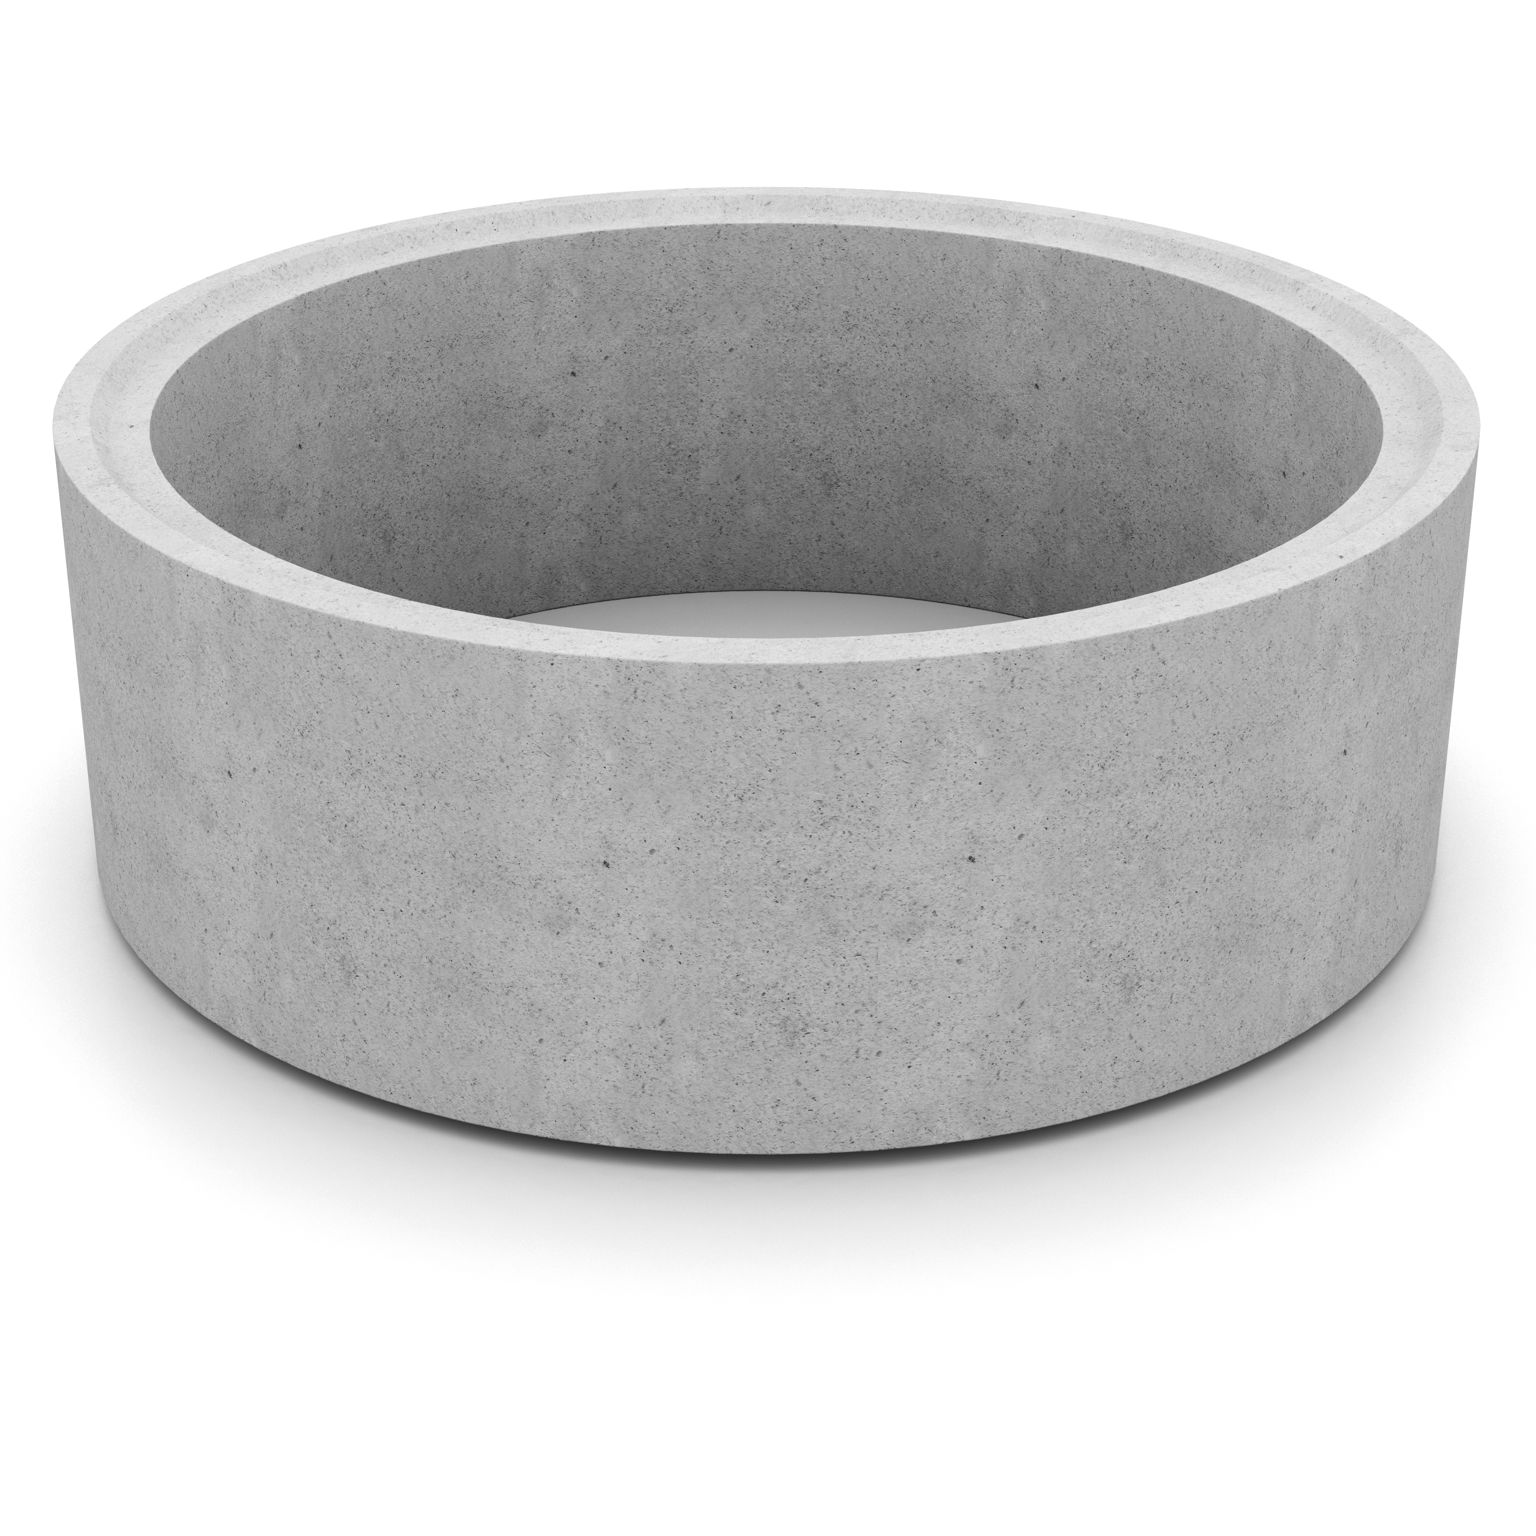 Produktbild av en cementfogad brunnsring i formatet: 2000x750 mm